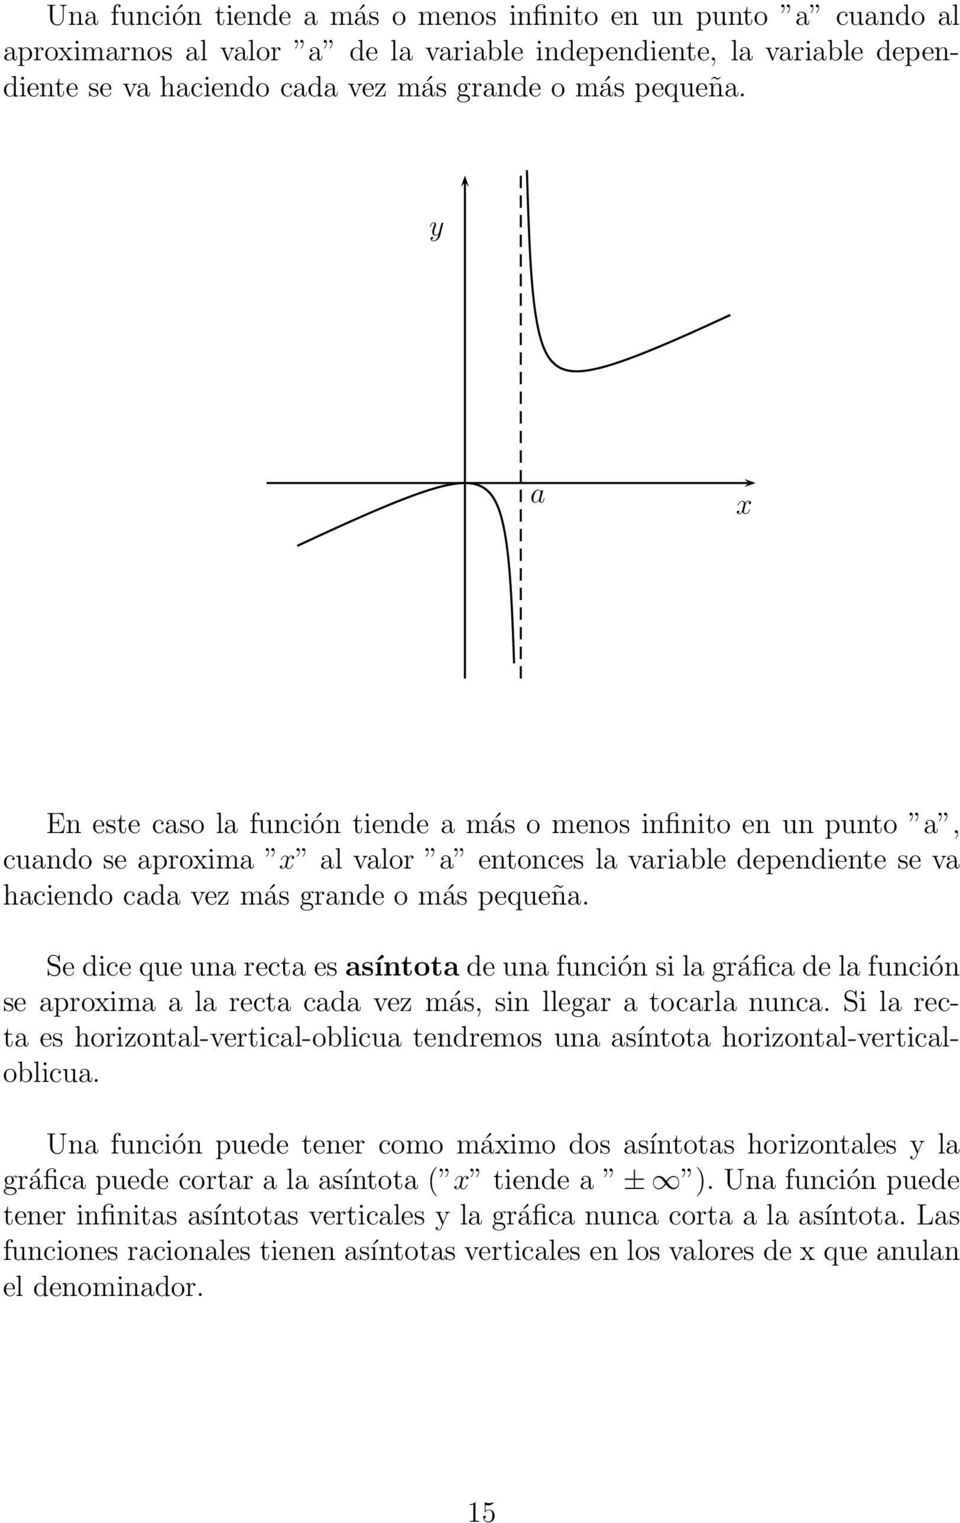 Se dice que una recta es asíntota de una función si la gráfica de la función se aproima a la recta cada vez más, sin llegar a tocarla nunca.